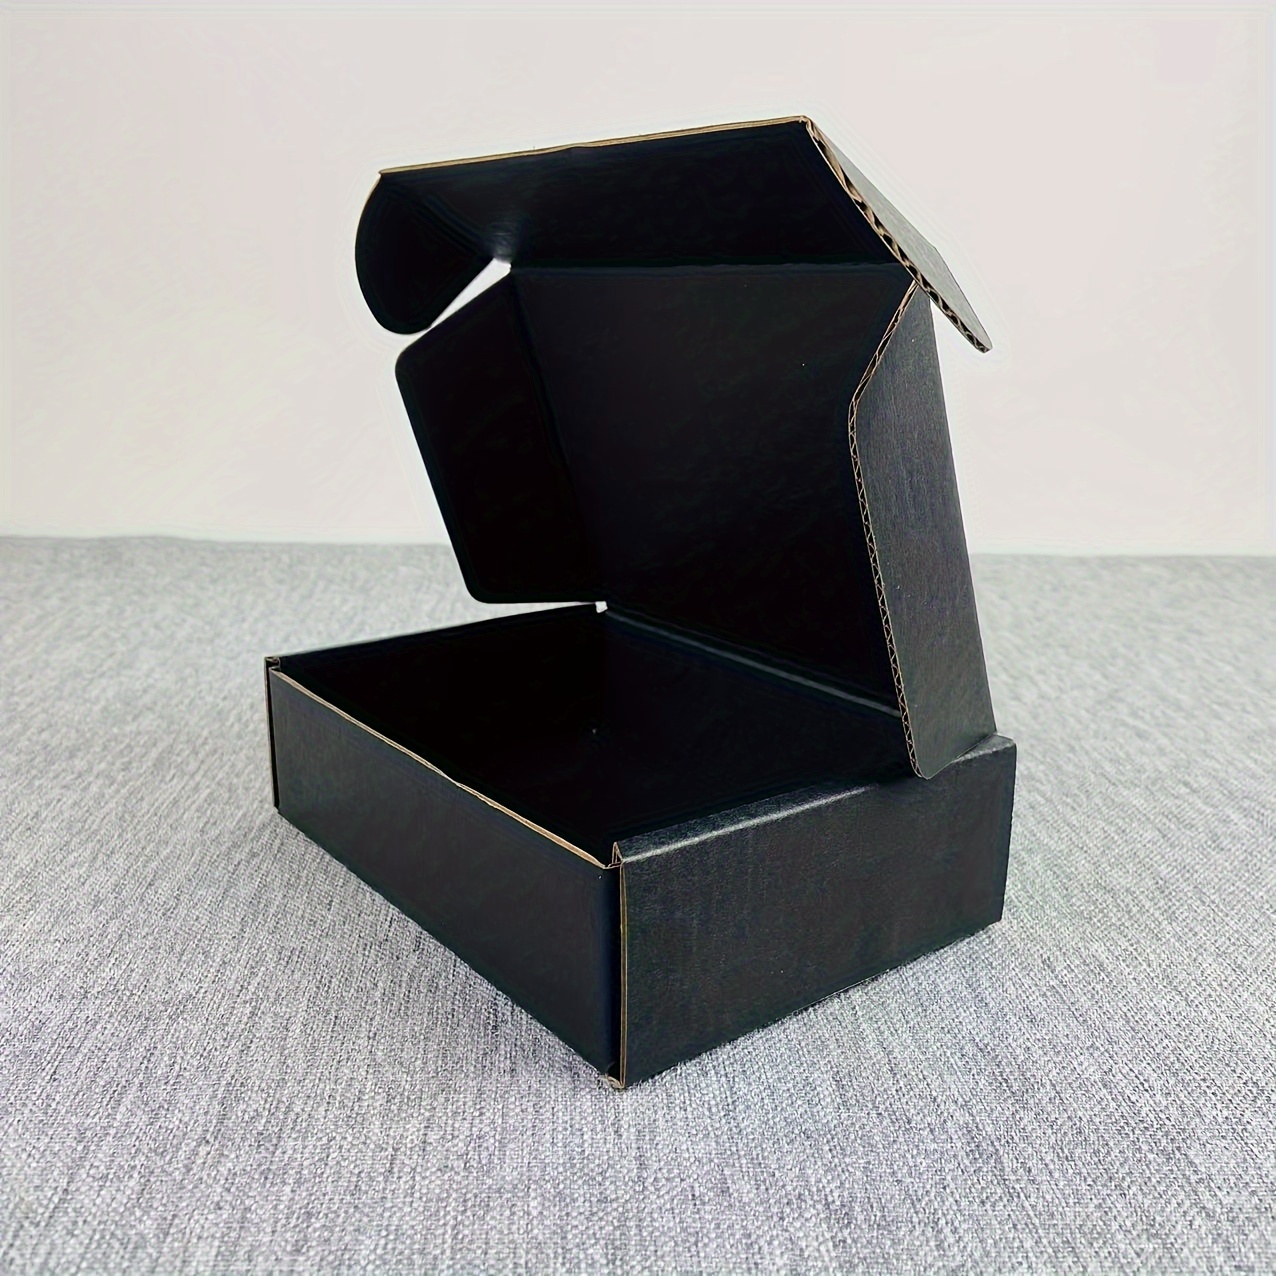  Cajas para mudanza tamaño grande, 20x20x15 pulgadas (paquete  económico de 6) cajas para embalaje / envíos / almacenamiento : Productos  de Oficina